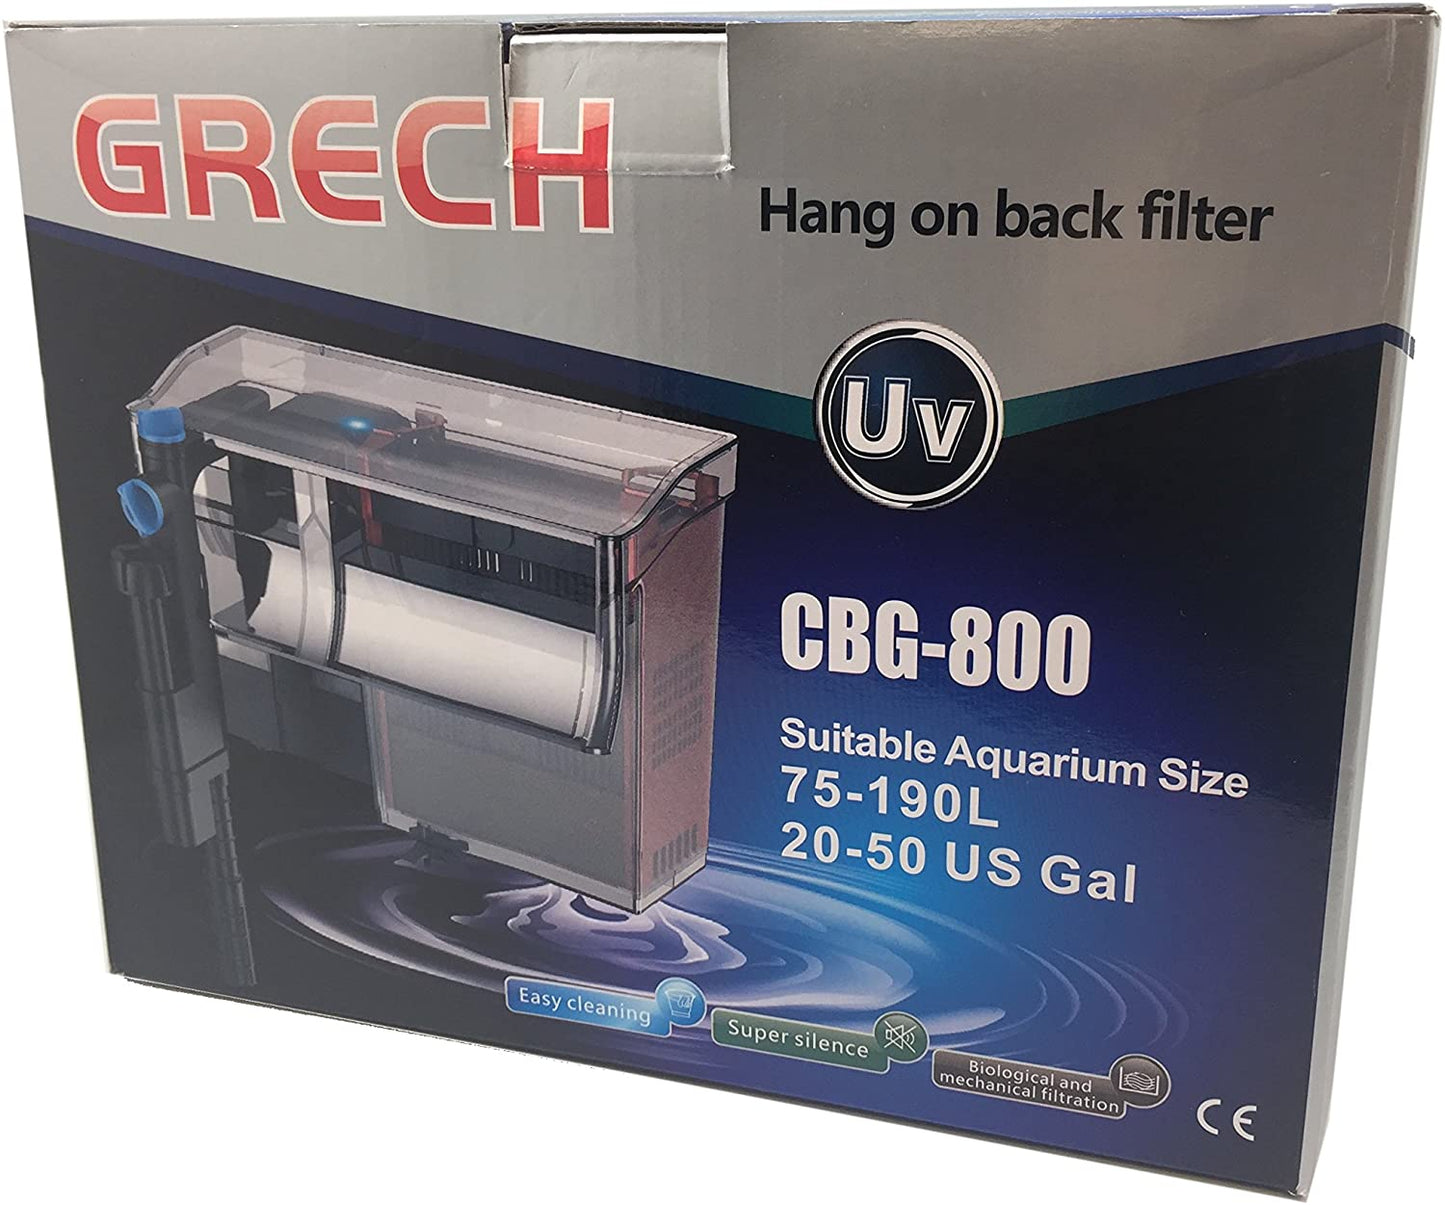 SUNSUN/GRECH CBG - 800 with UV lamp